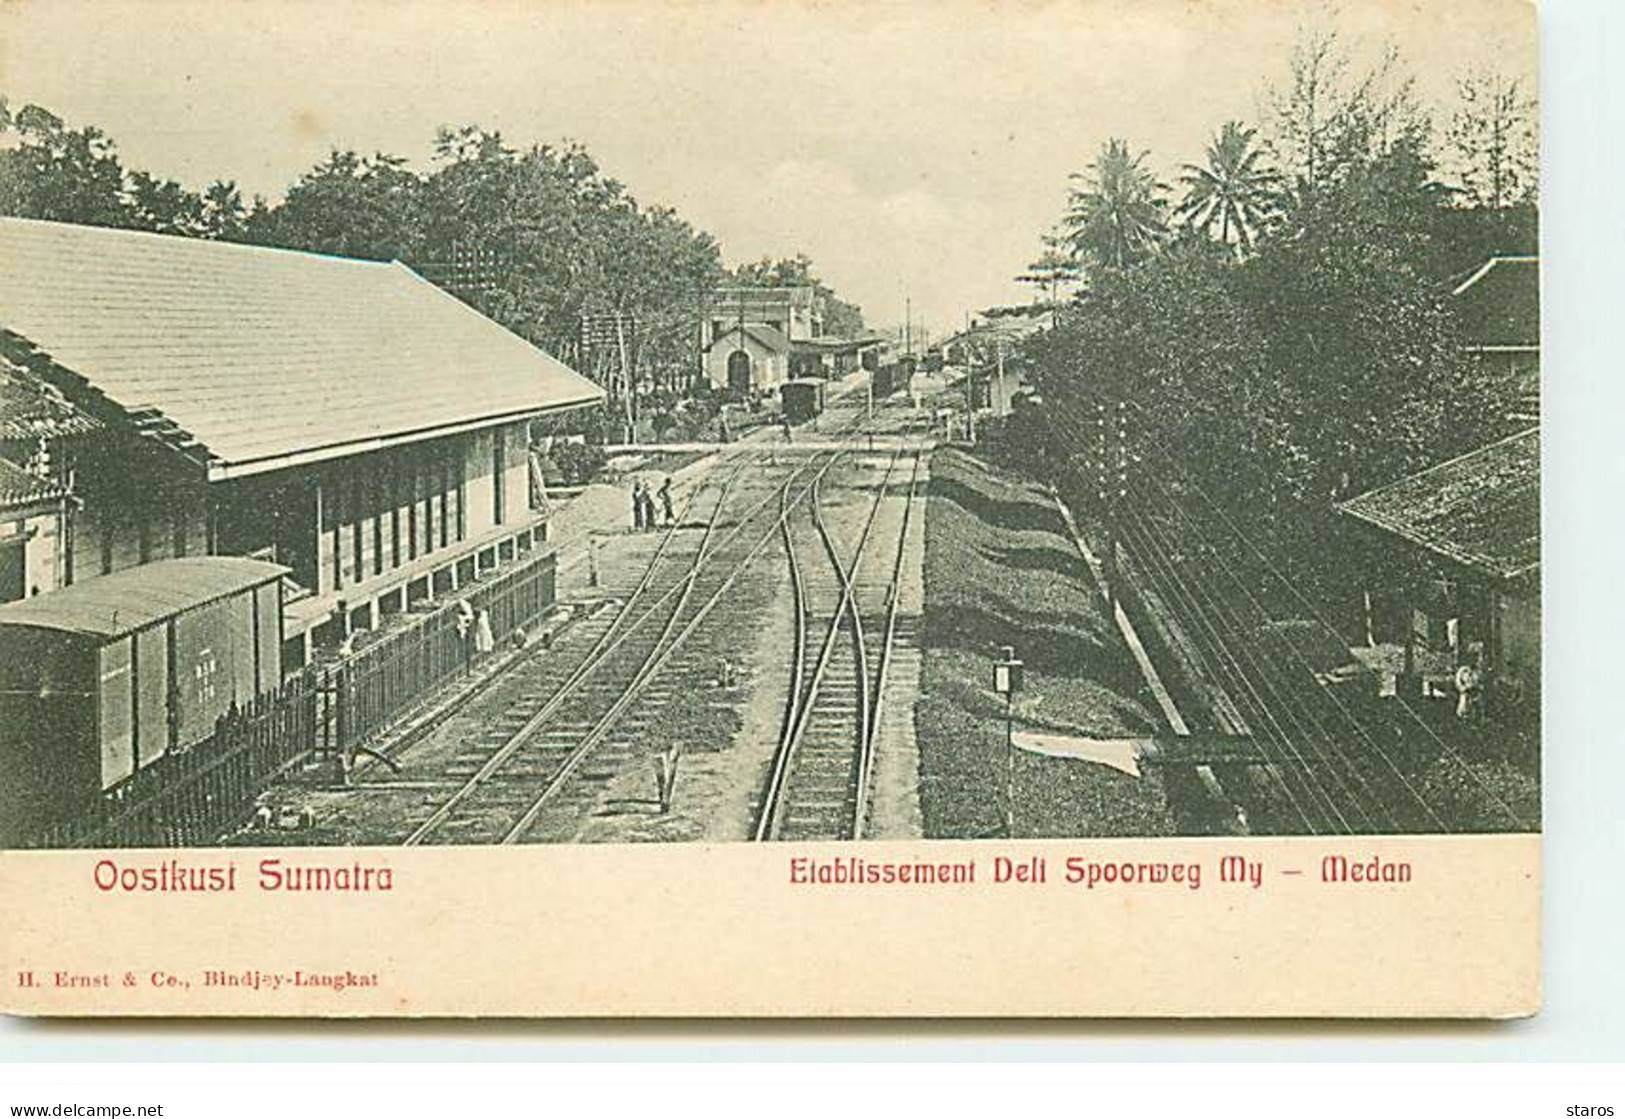 Indonésie - Oostkust Sumatra - Etablissement Deli Spoorweg My - Medan - Bahnhof - Gare - Indonésie